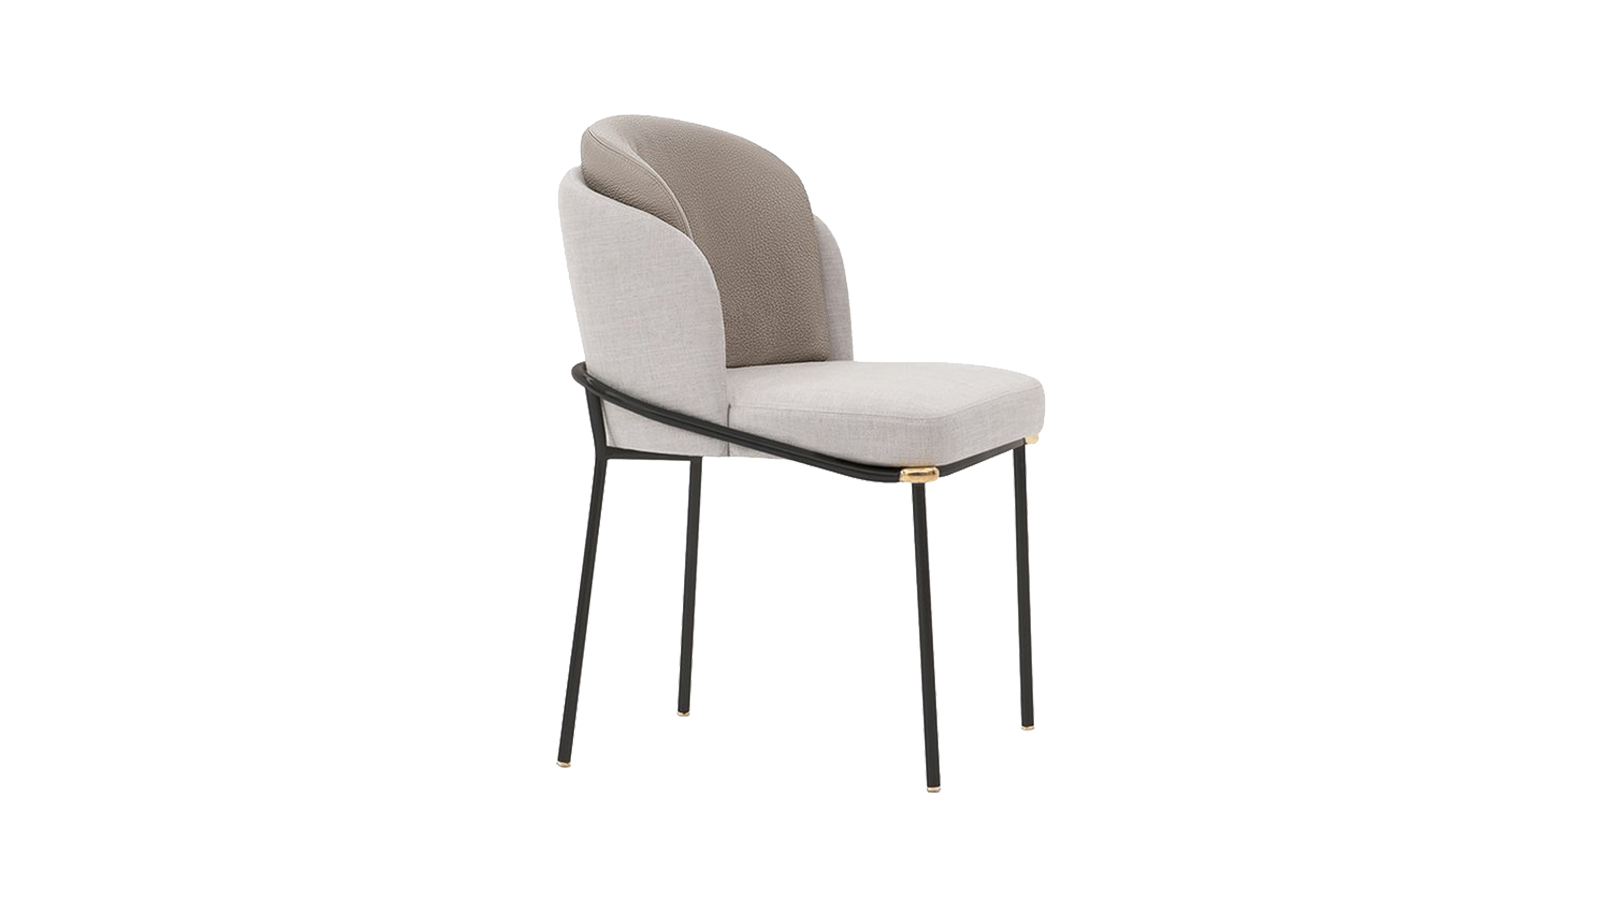 A Minotti Fil Noir széke a folytonosság megtestesítője. A váz, amely a szék kontúrját adja, nem csak formai szempontból, hanem funkcionálisan is támogatja és széket, egyszerre szolgálja a kényelmet és az elegáns megjelenést. A kettős háttámla a szék legkülönlegesebb eleme, amely nem csak a megjelenést teszi vonzóvá, de extra kényelmet is biztosít. A Minotti ismét bebizonyította, hogy kézműves megmunkálás és a kortárs design nem, hogy kizárnák, de támogatják is egymást.